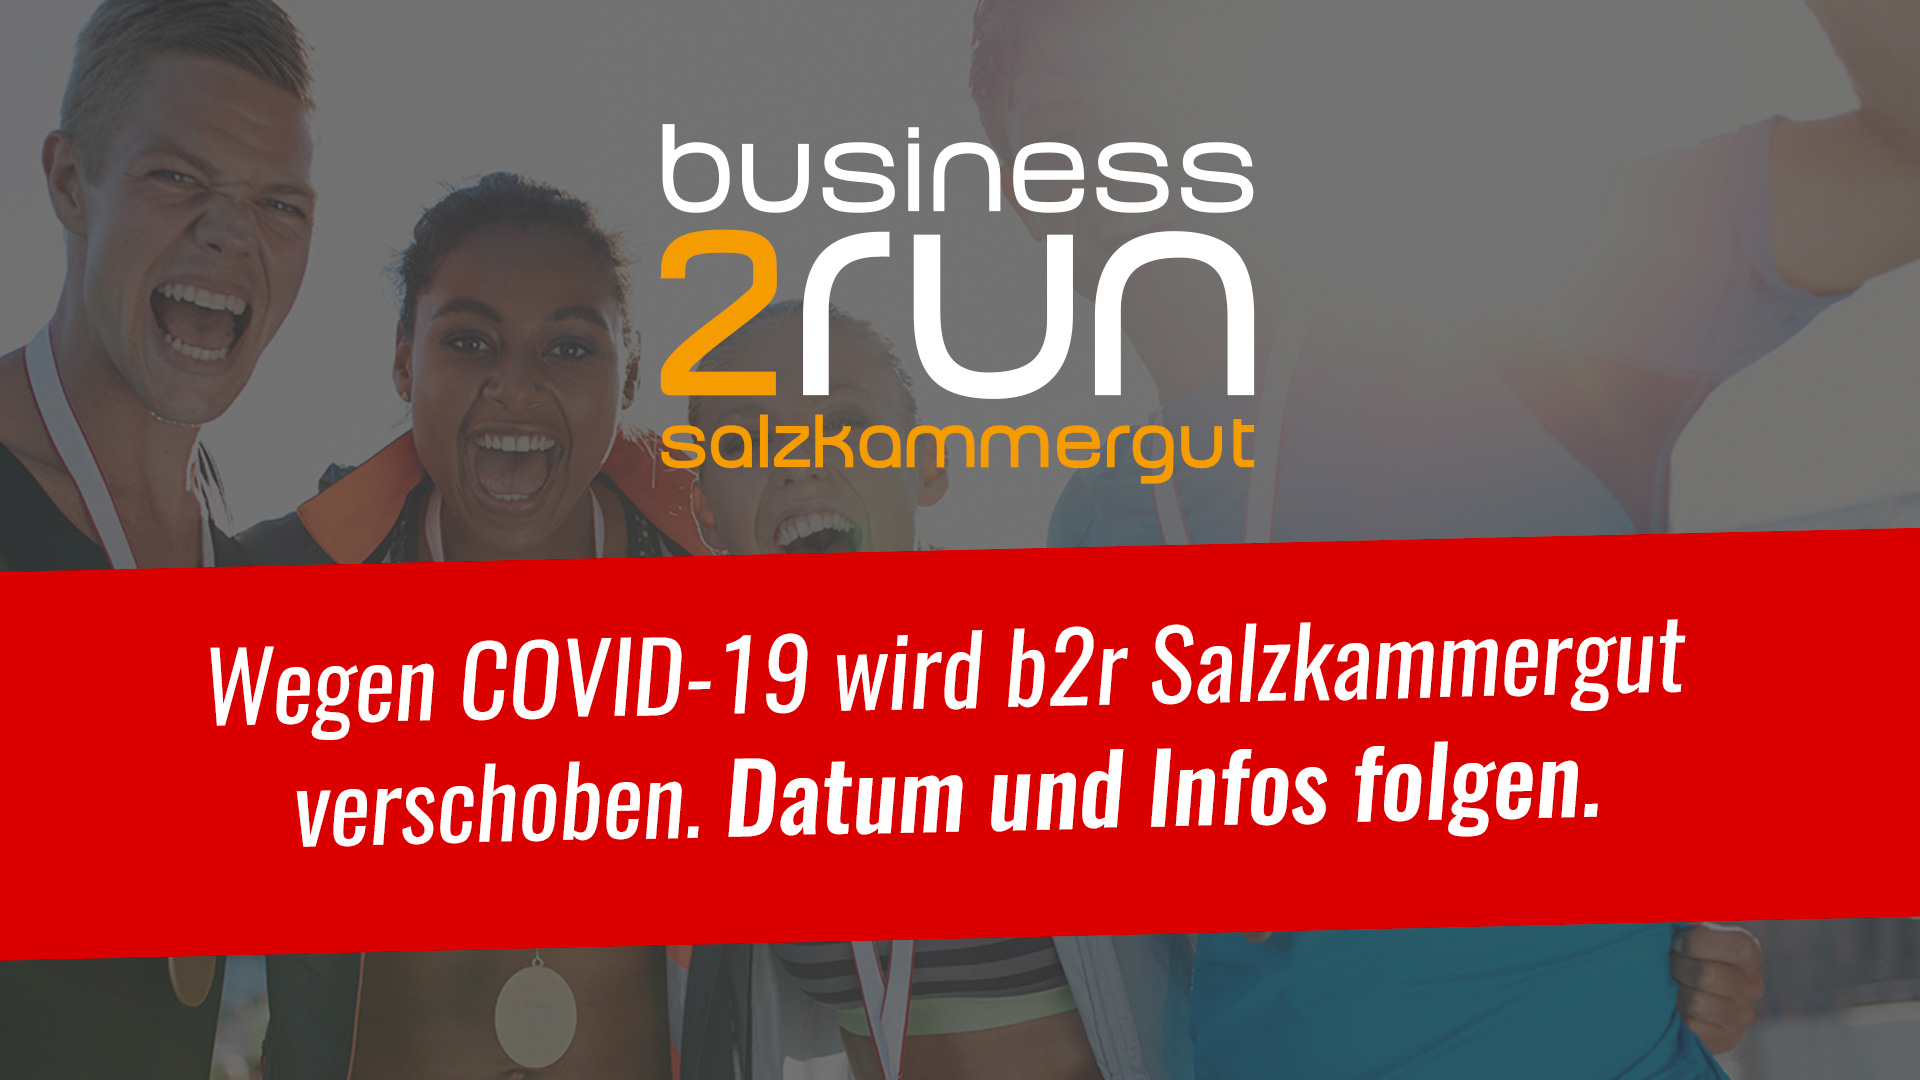 business2run Salzkammergut (Gmunden)